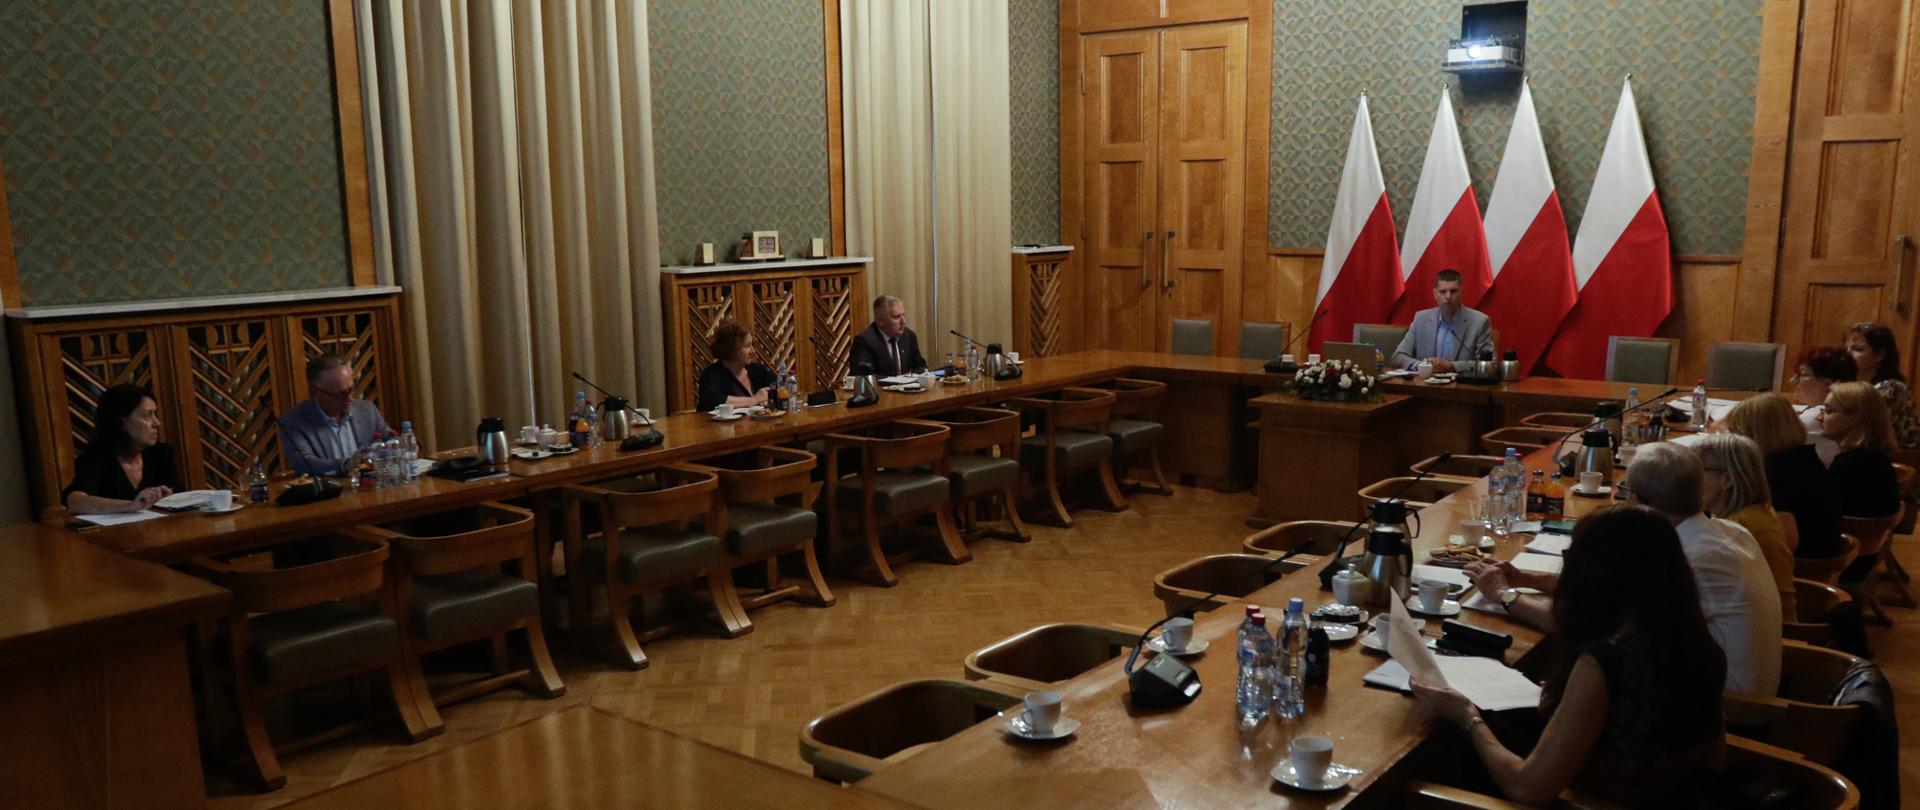 Ludzie siedzący przy stołach w dużej sali. W centrum wiceminister edukacji i nauki Dariusz Piontkowski na tle flag Polski